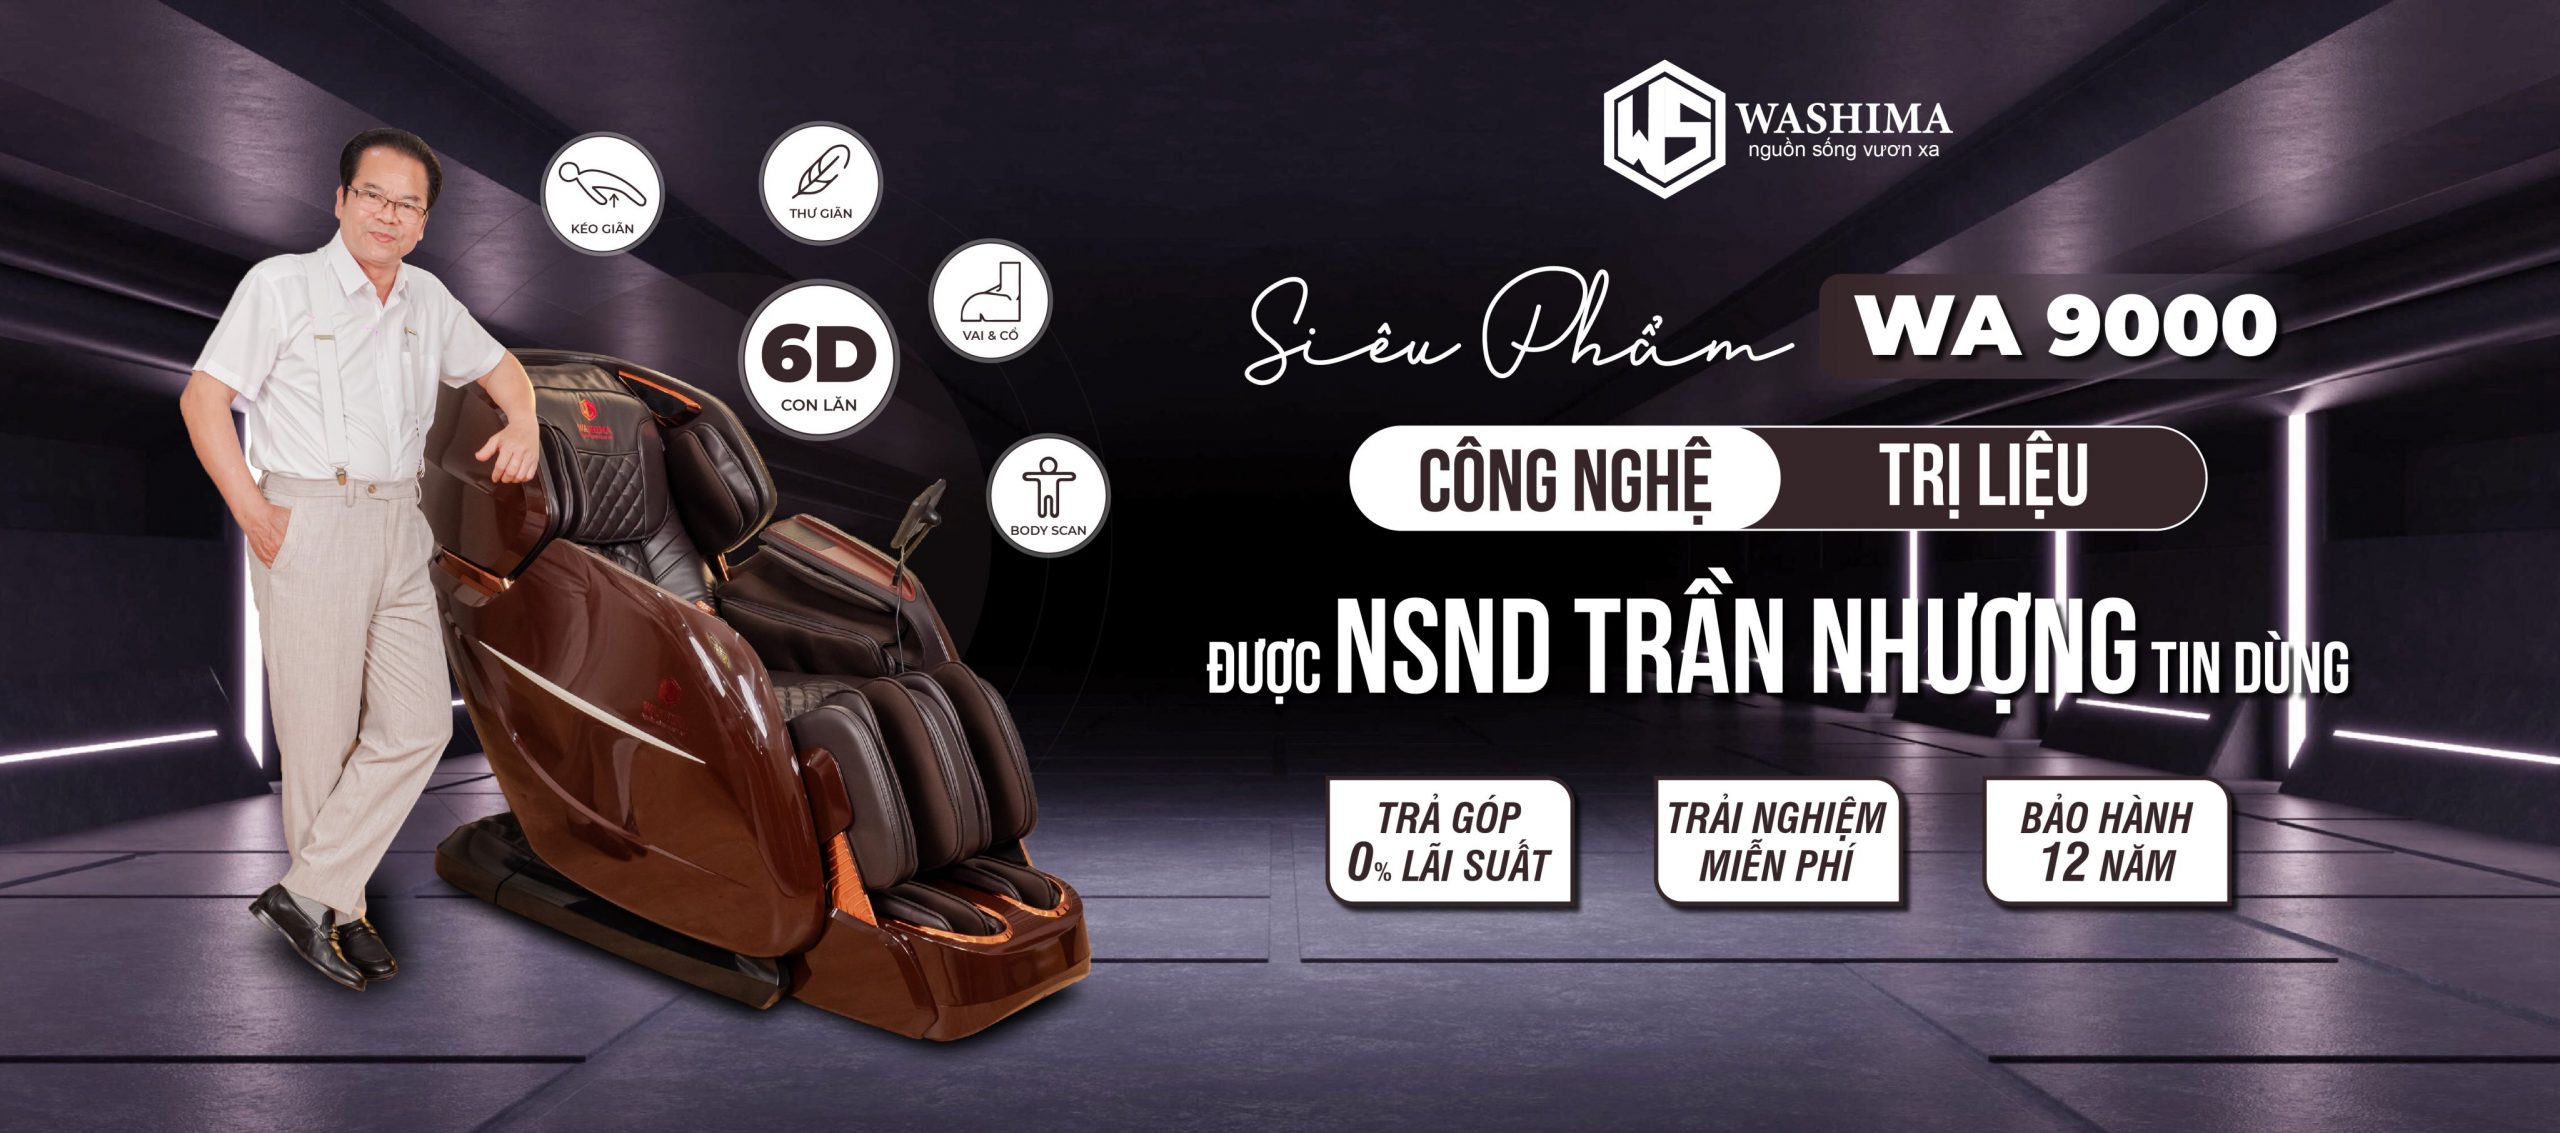 Ghế massage Washima WA-9000 được nghệ sĩ nhân dân Trần Nhượng tin dùng